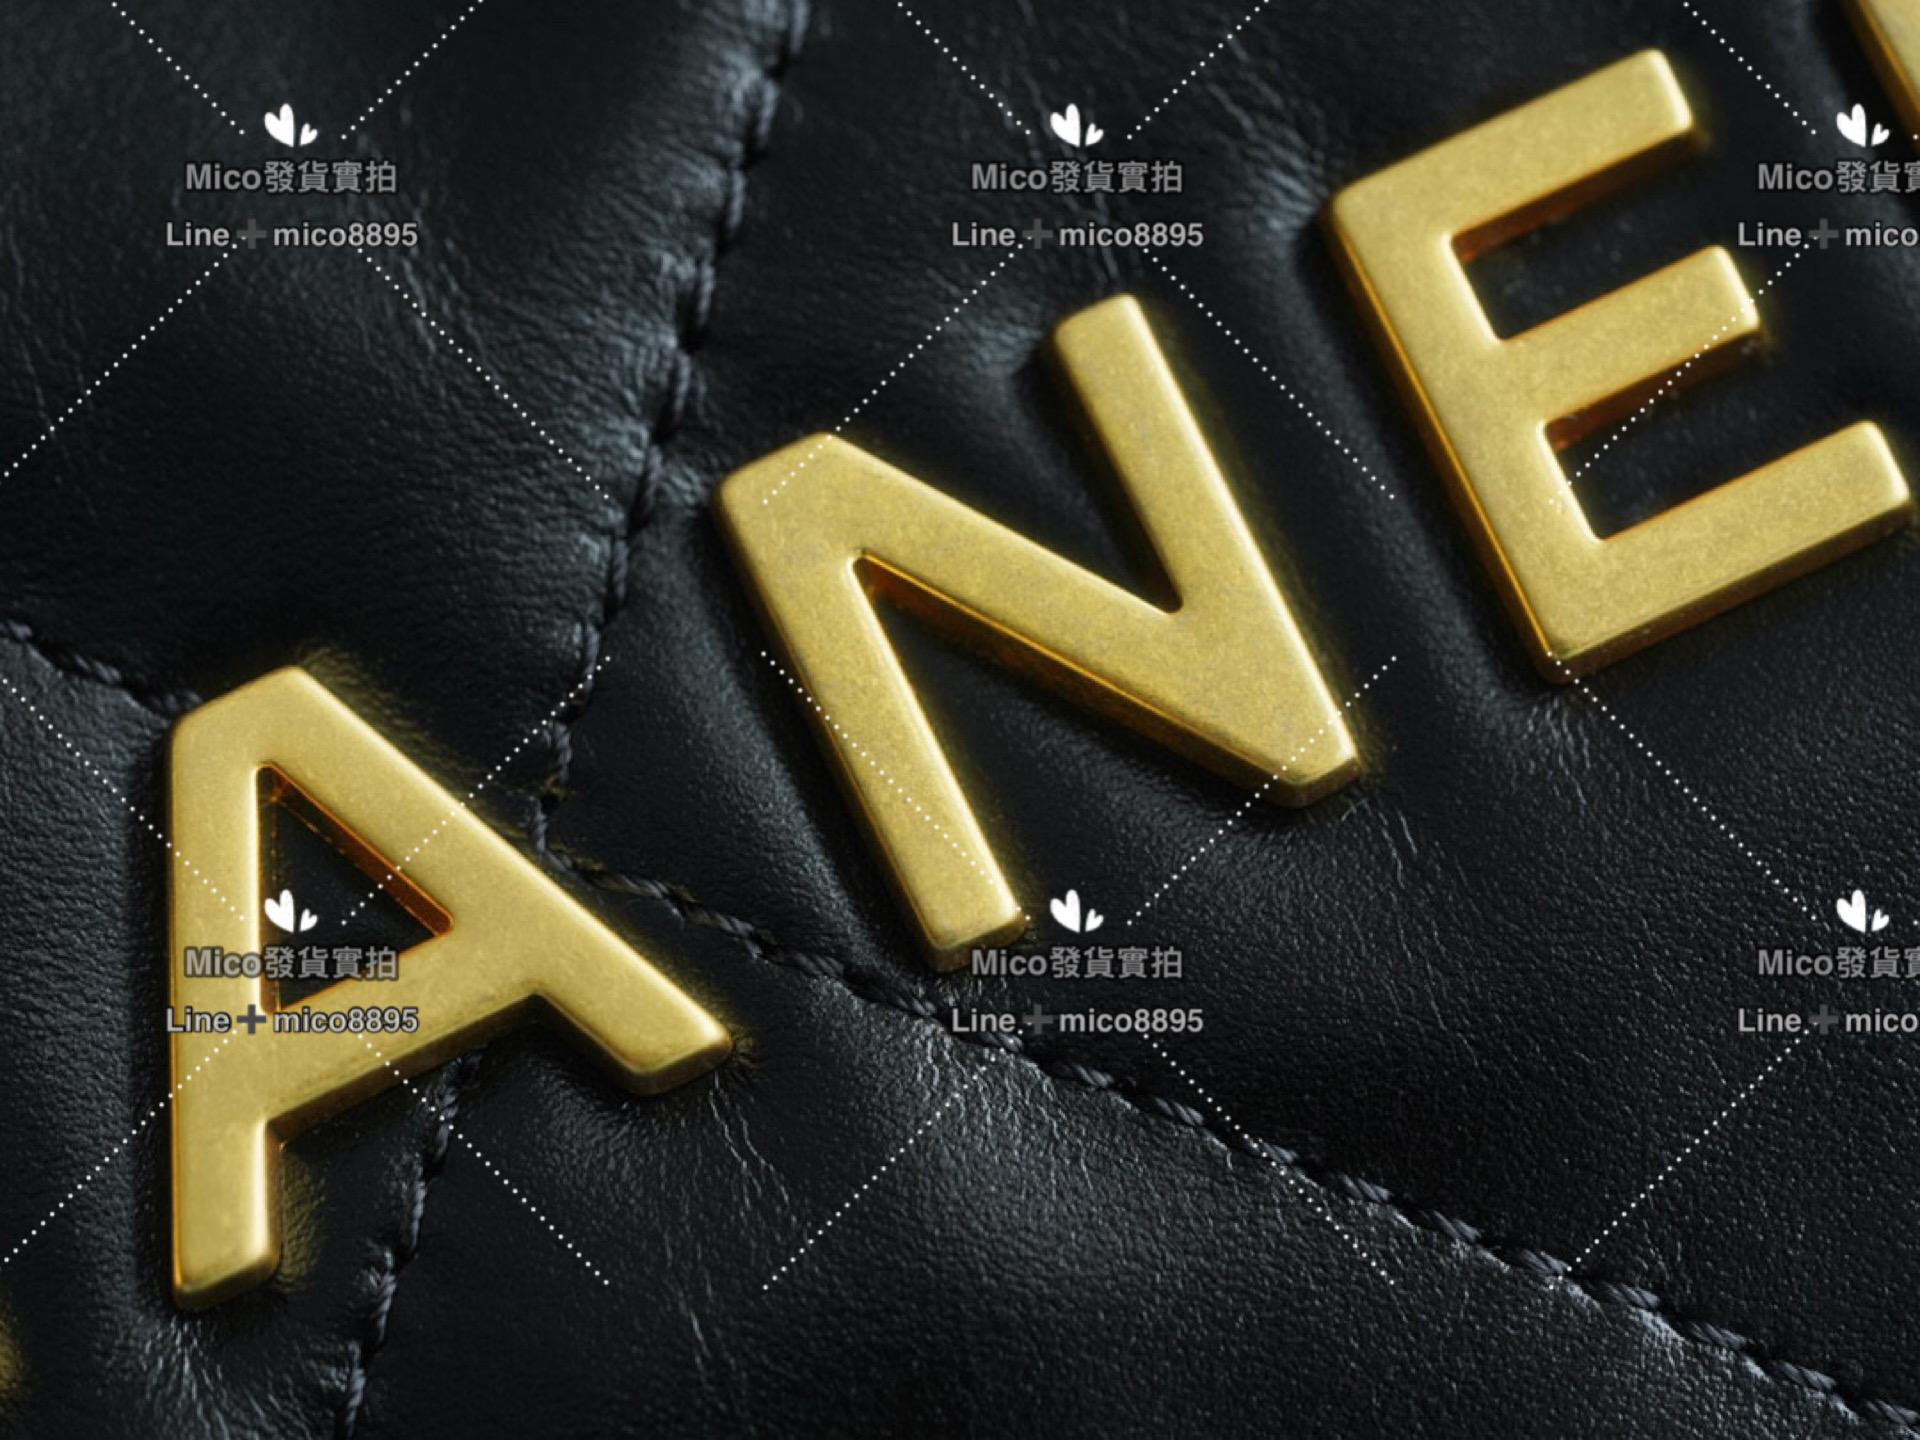 Chanel 最新爆款 22系列手袋 購物袋 牛皮 黑金 中號 尺寸 39*42cm